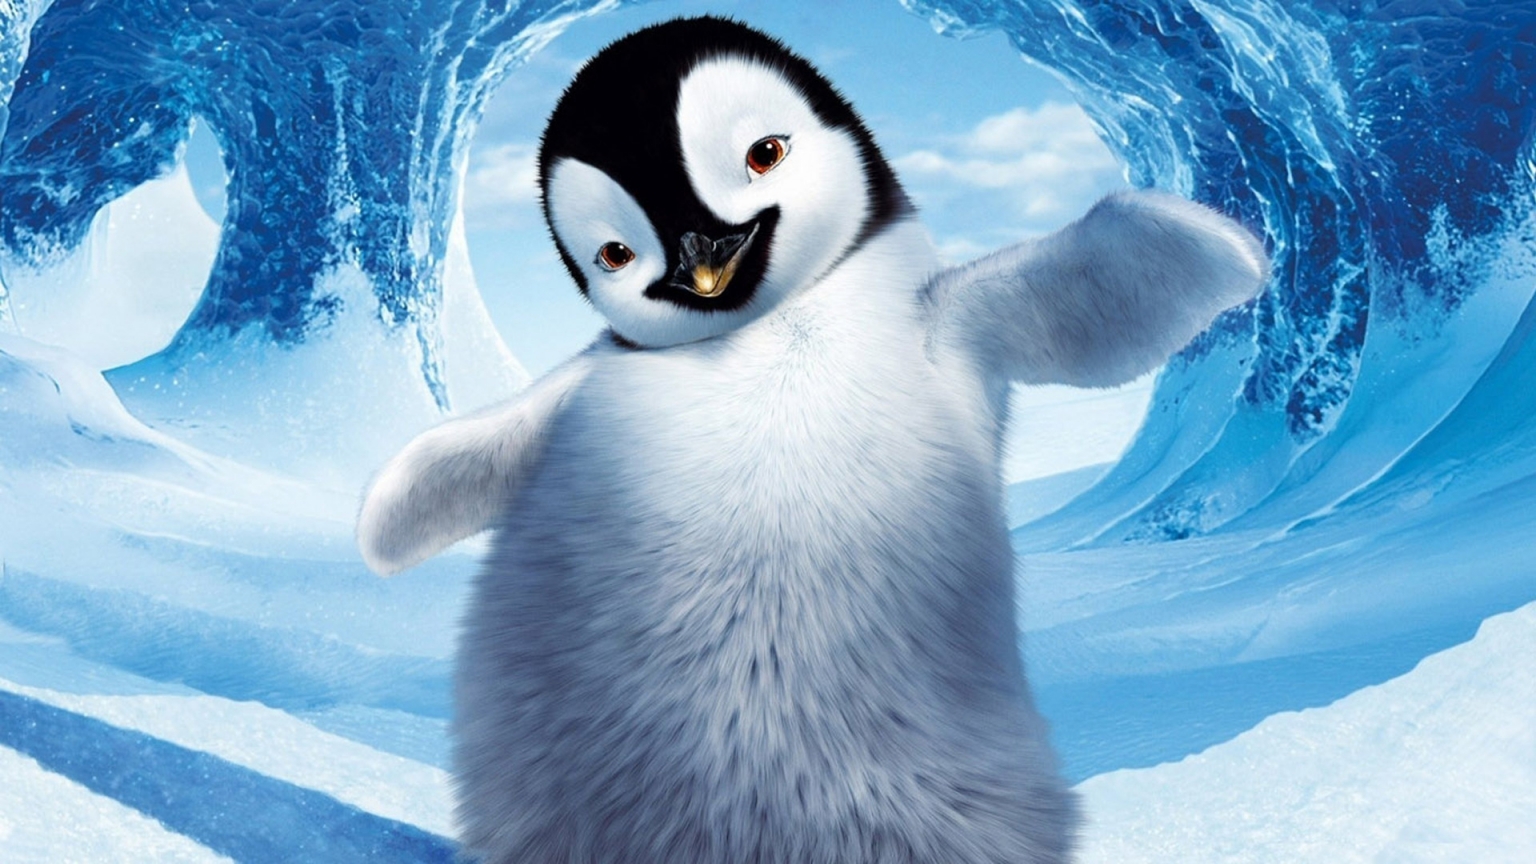 Happy Feet Penguin for 1536 x 864 HDTV resolution